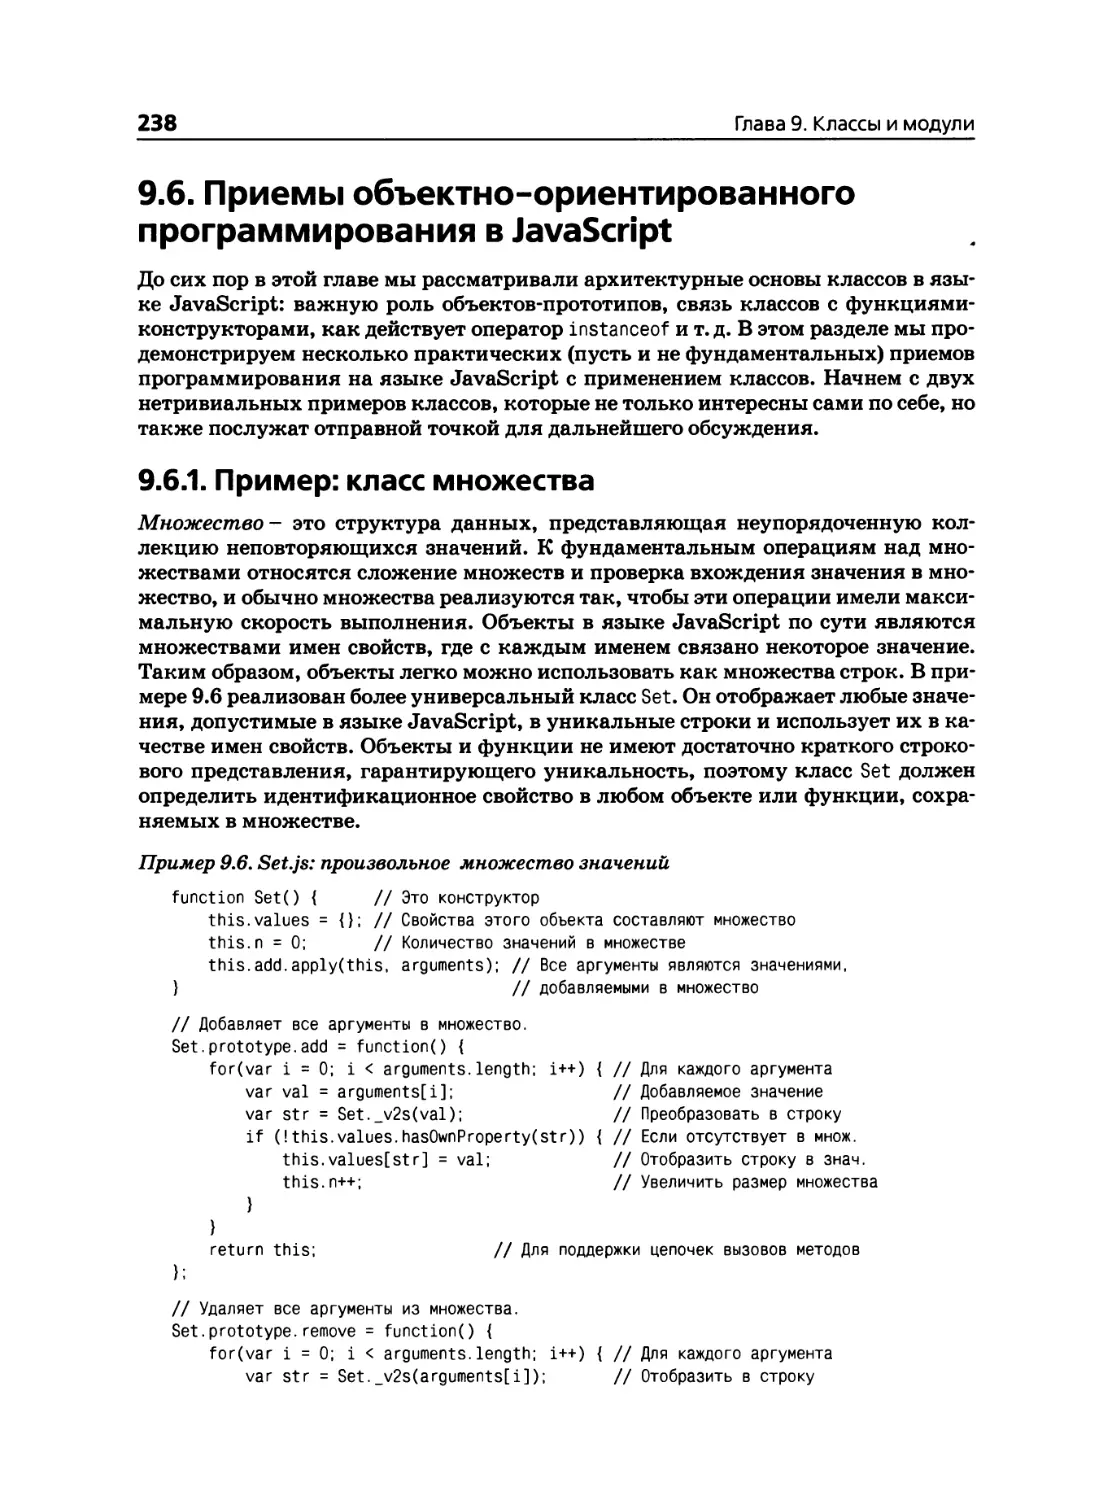 9.6. Приемы объектно-ориентированного программирования в JavaScript